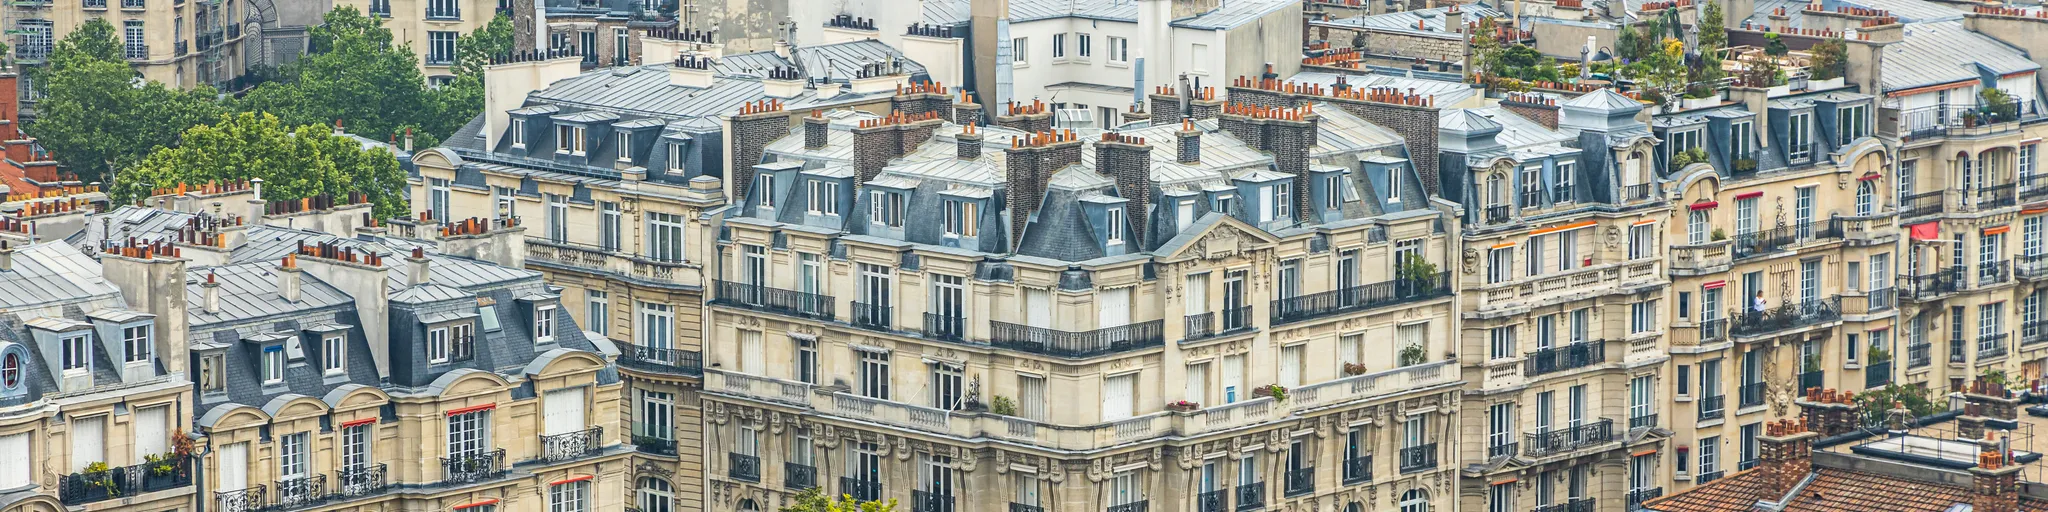 Immeubles résidentiels haussmanniens typiques de Paris © iStock/ Jean-Luc Ichard